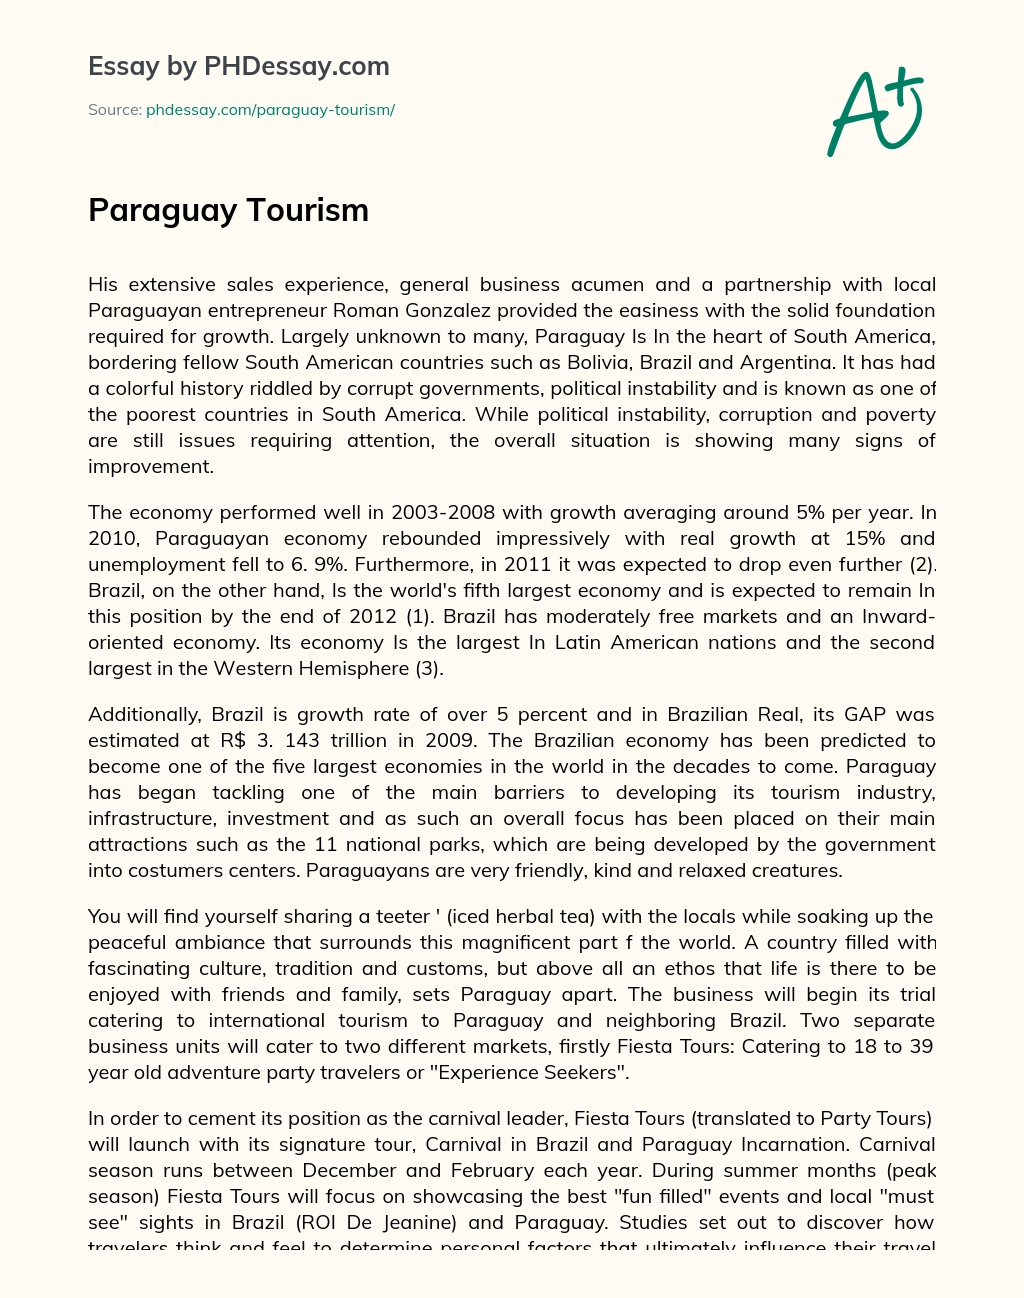 Paraguay Tourism essay